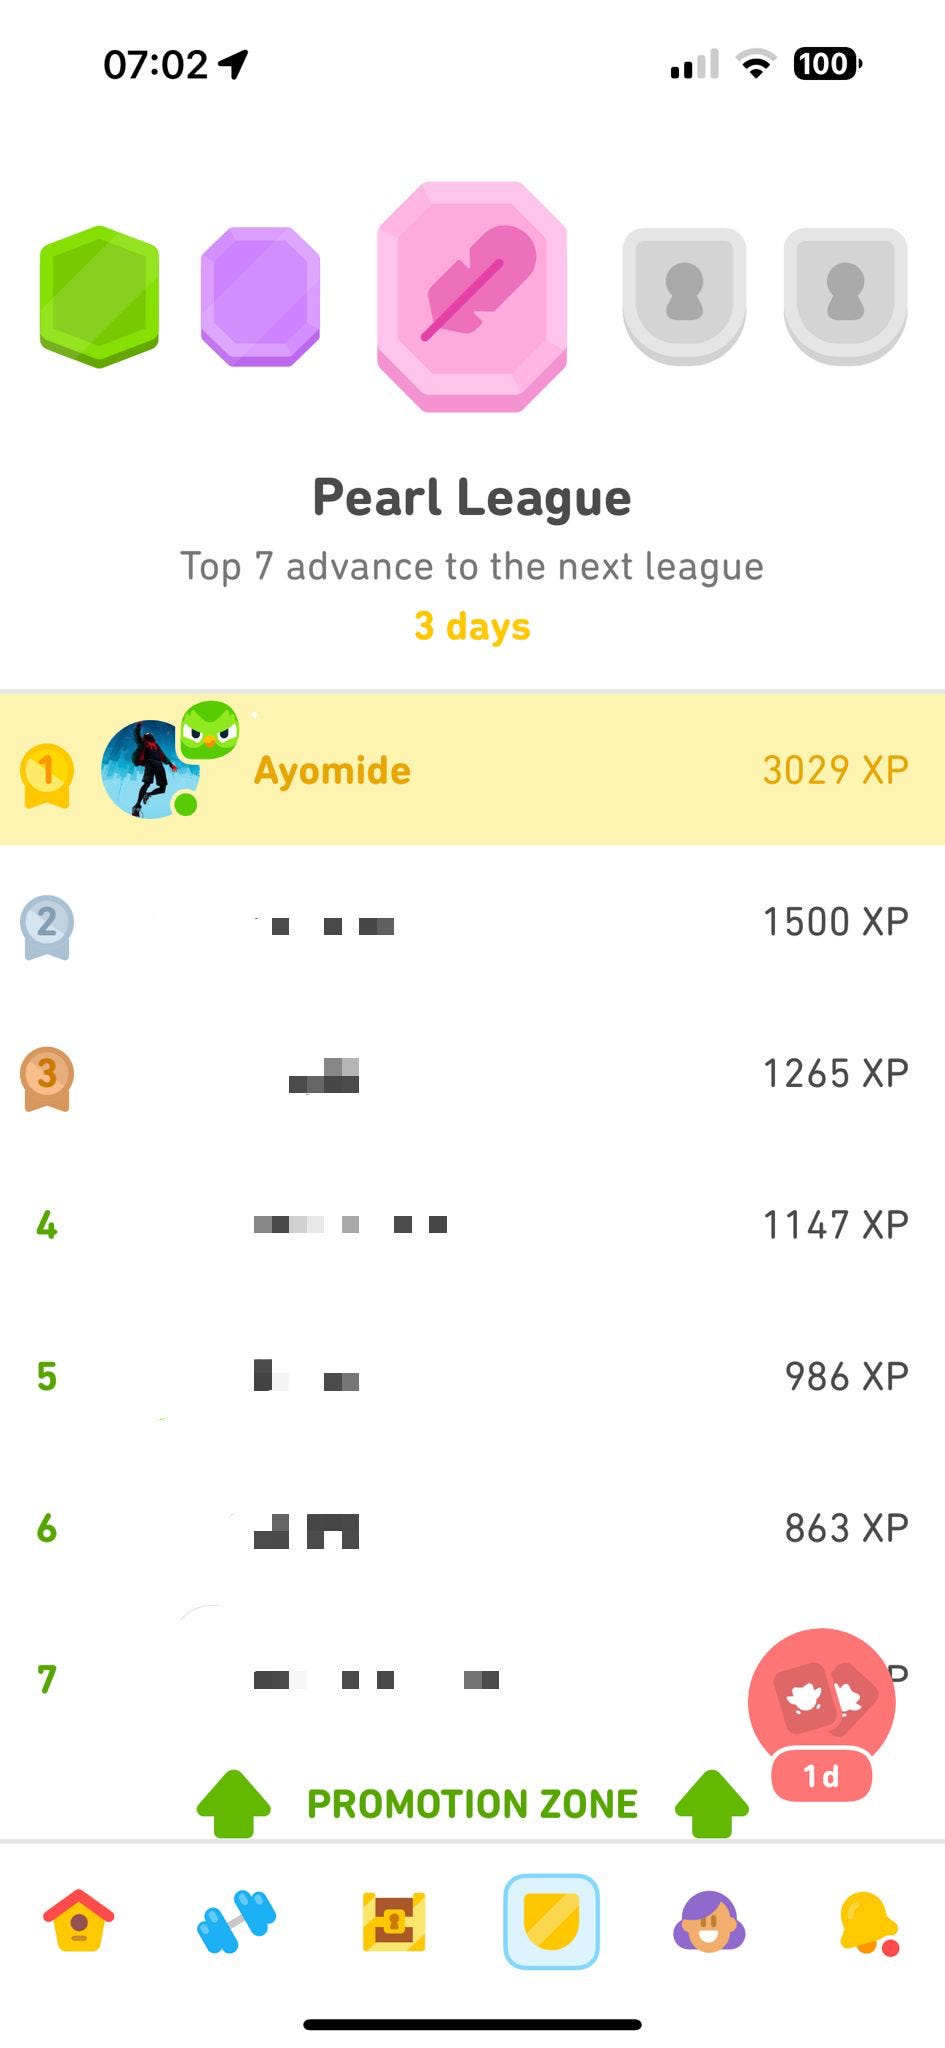 This week’s standings in Duolingo